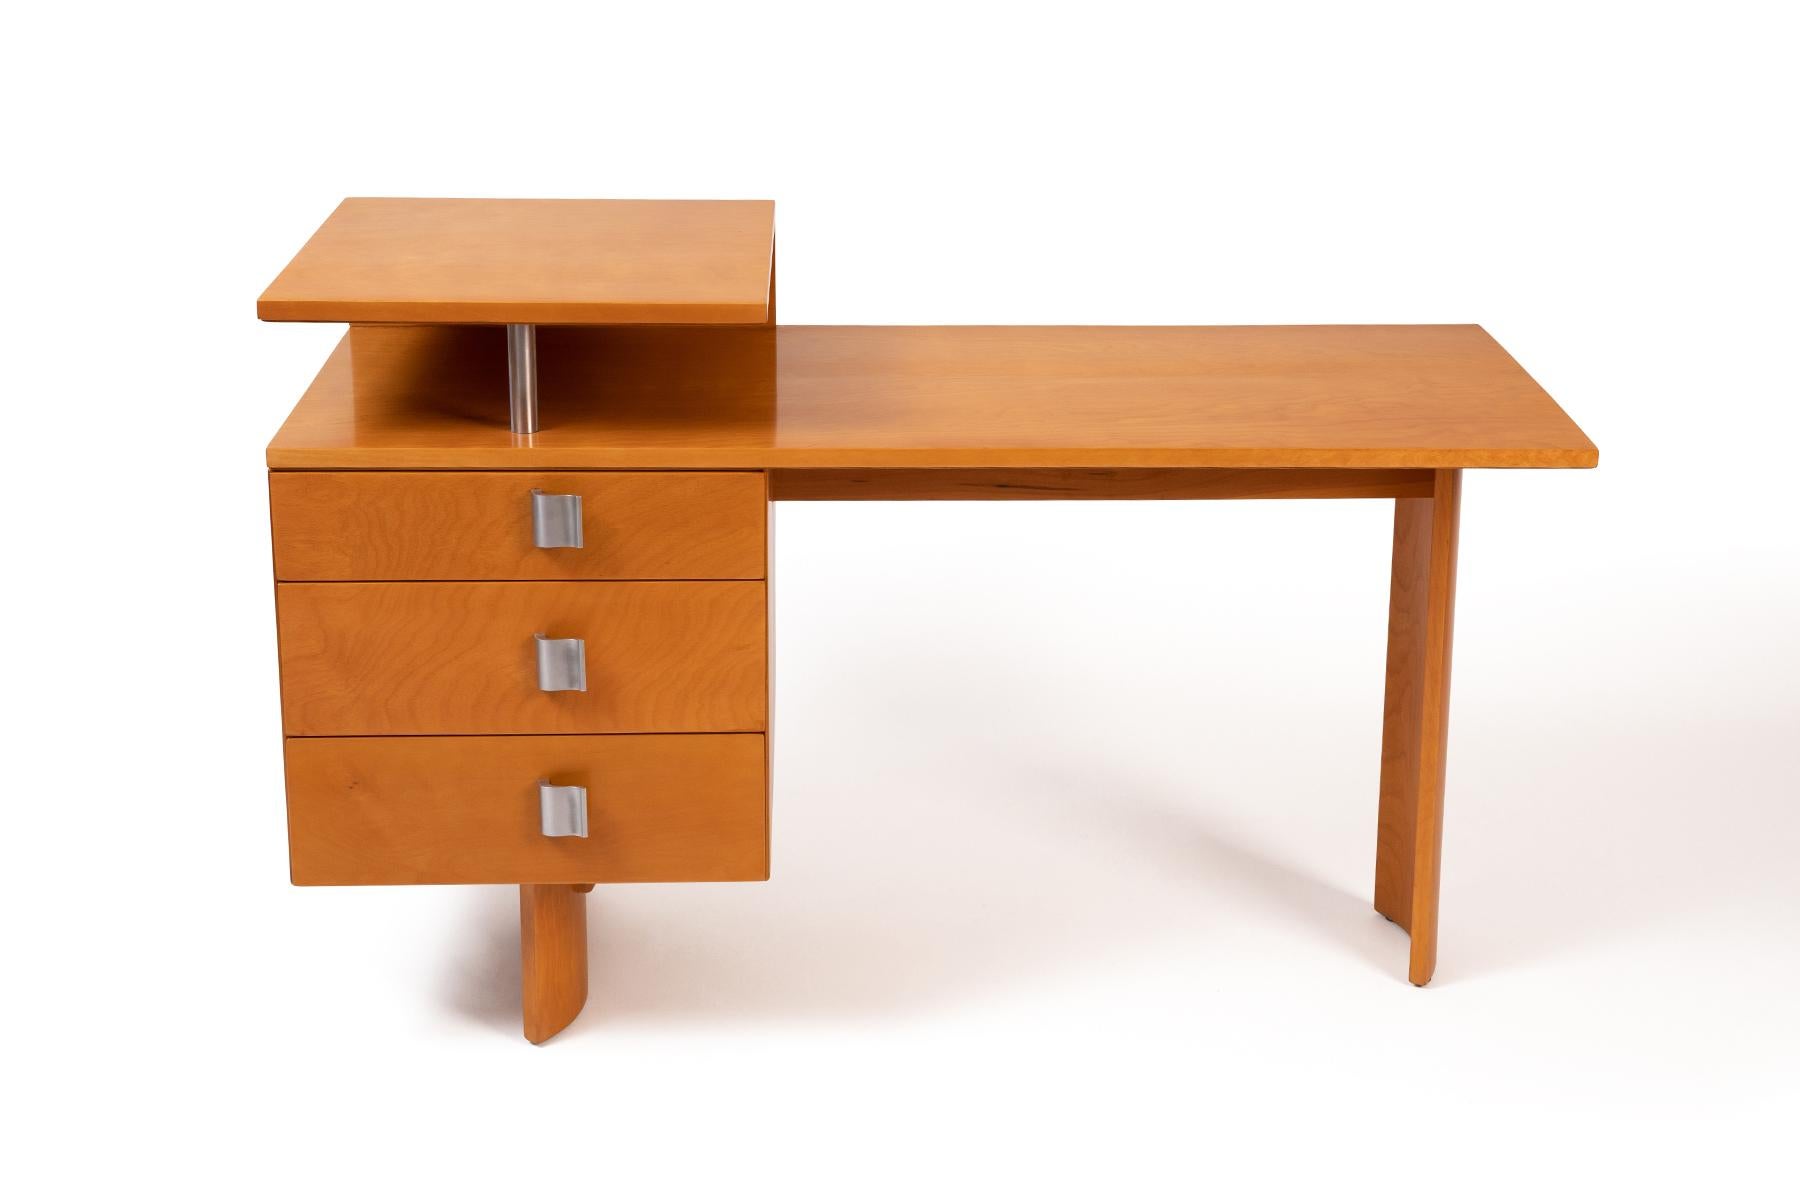 Schreibtisch von Eliel Saarinen für Johnson, ca. 1948. Dieses seltene Exemplar aus Birkenholz hat drei Schubladen, skulpturale s-förmige Beine und geformte Aluminiumgriffe. Es ist meisterhaft restauriert worden. Bitte beachten Sie unsere anderen